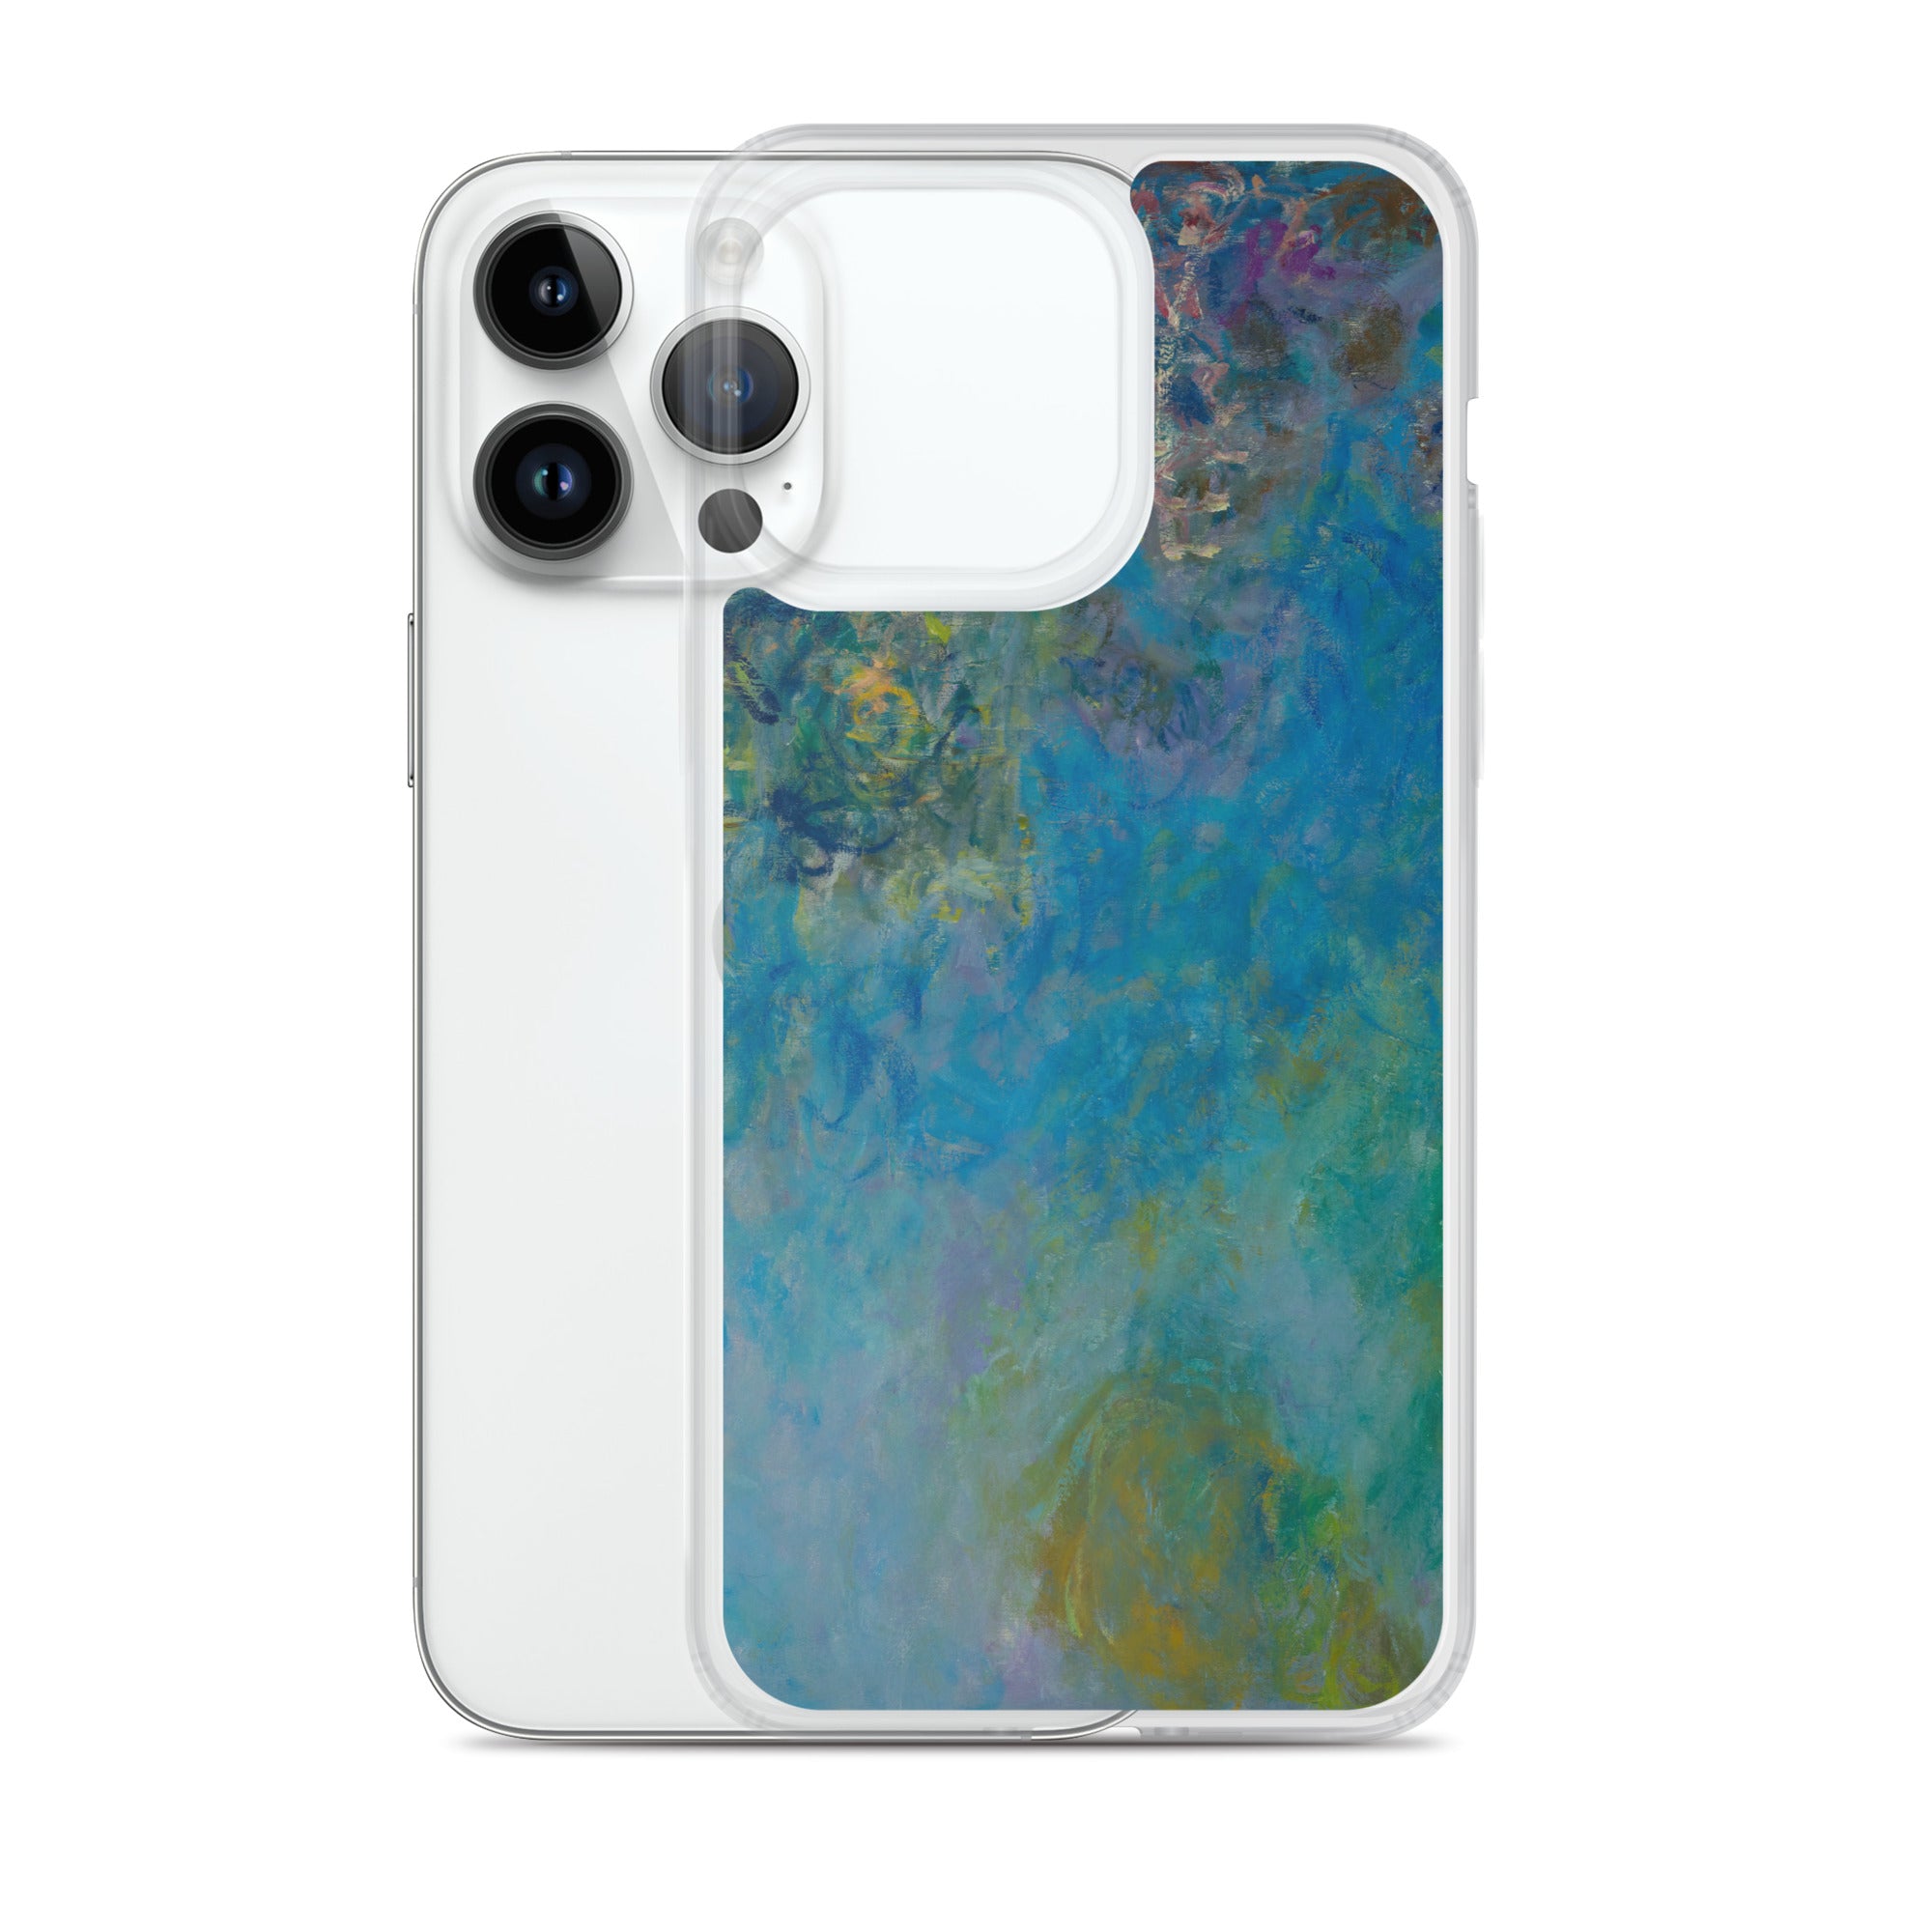 Claude Monet „Wisteria“ Berühmtes Gemälde iPhone® Hülle | Transparente Kunsthülle für iPhone®